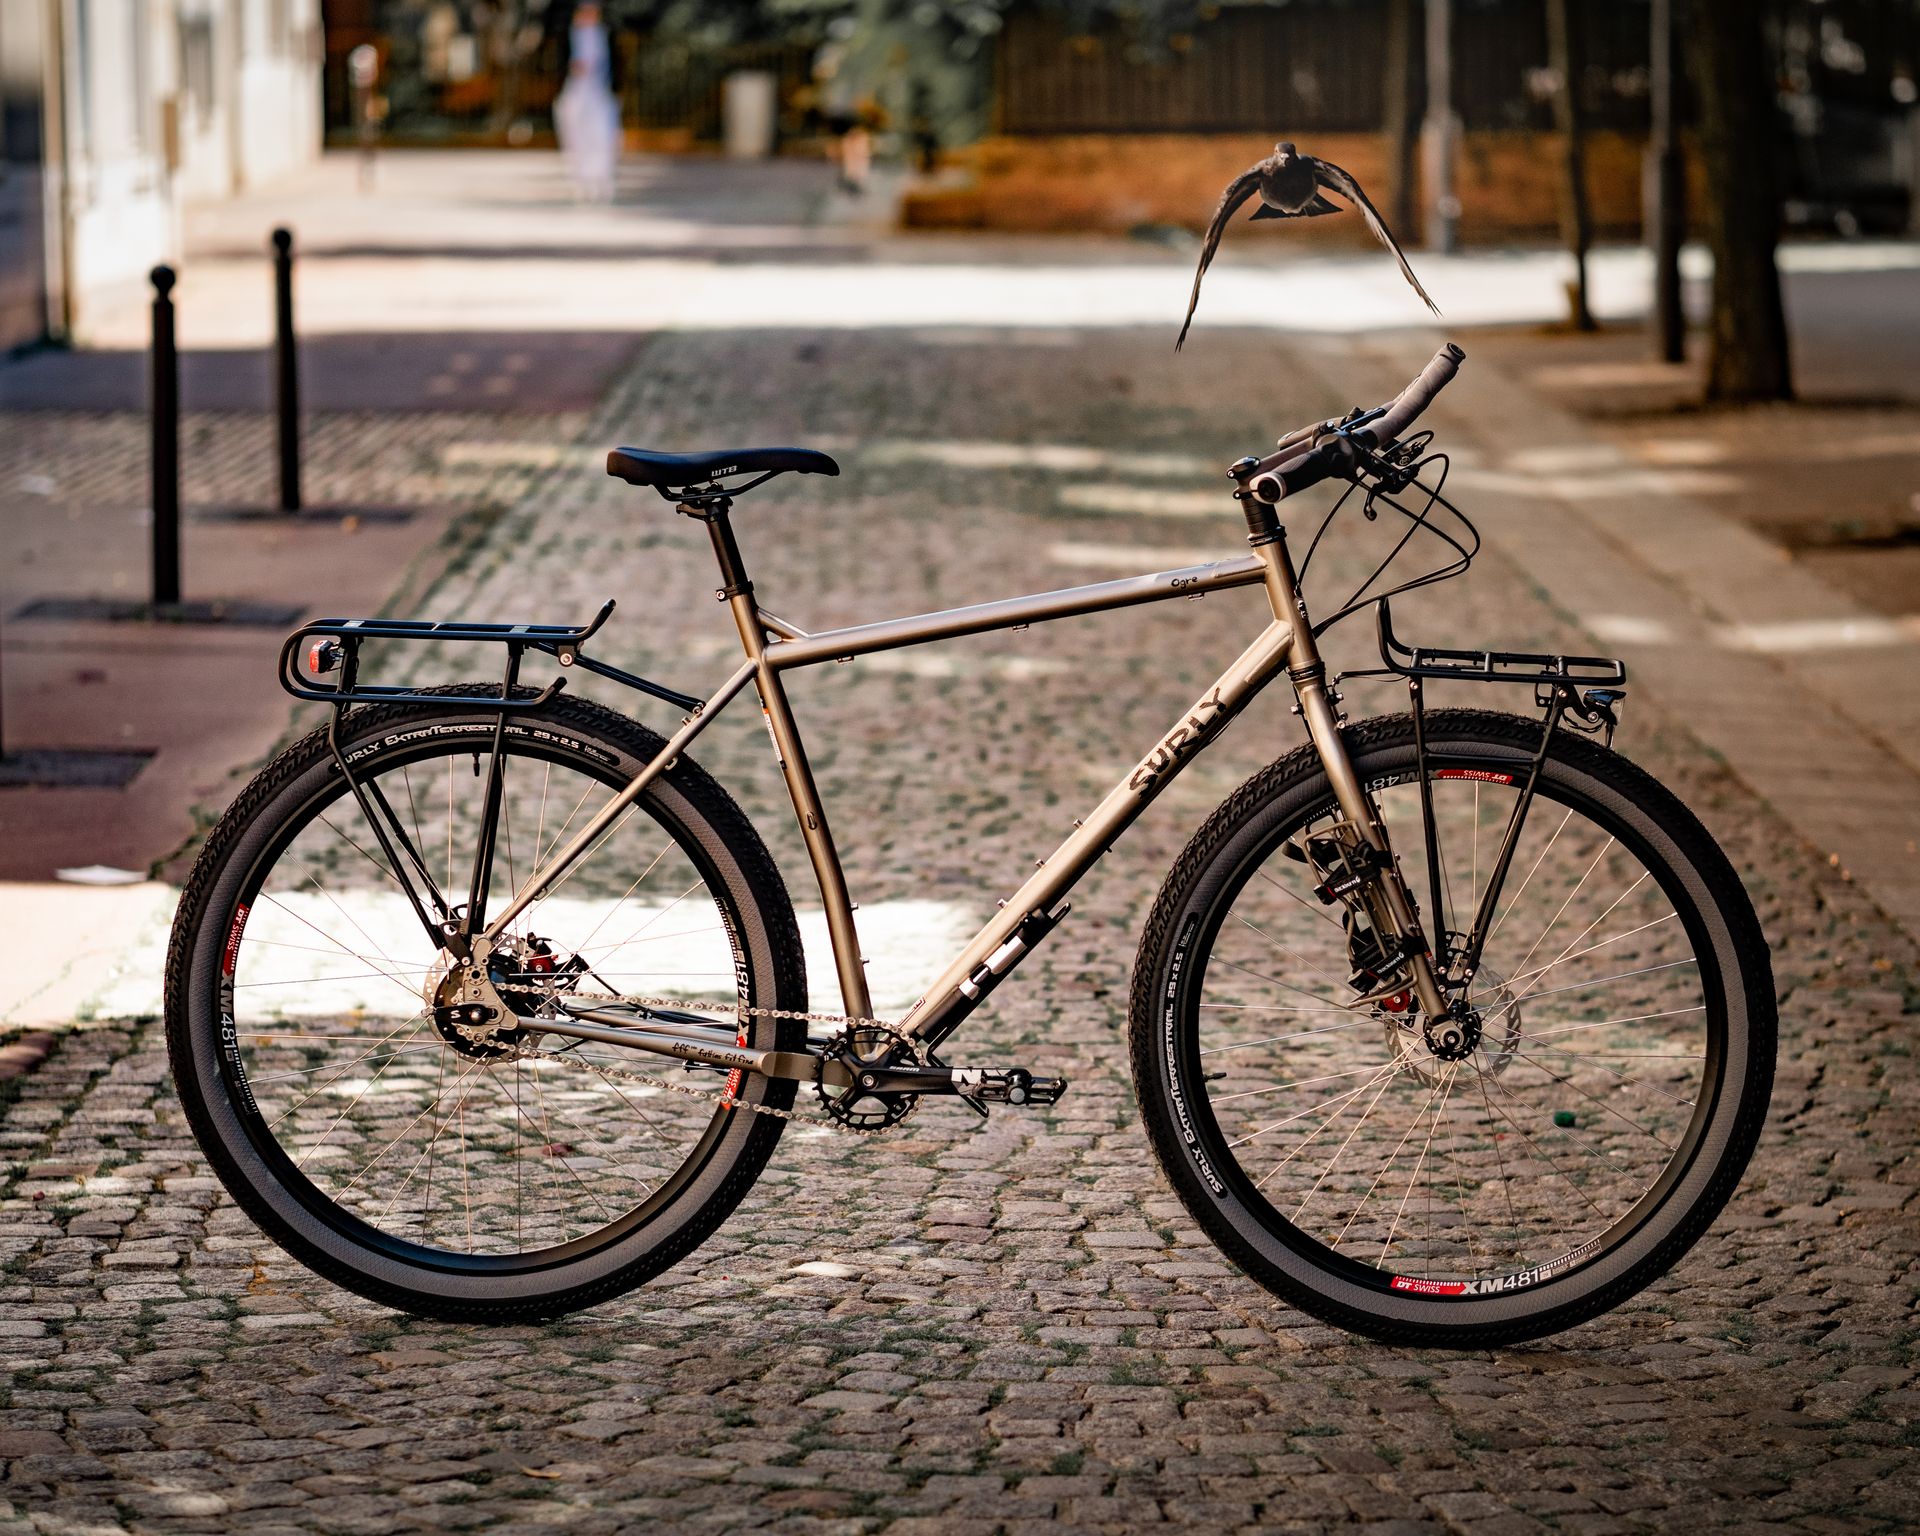 Magasin de cycles et atelier de réparation velo et montage vélo à la carte à Paris 13eme spécialisé dans le gravel et le voyage. Surly Ogre + moyeu Rohloff 14 vitesses